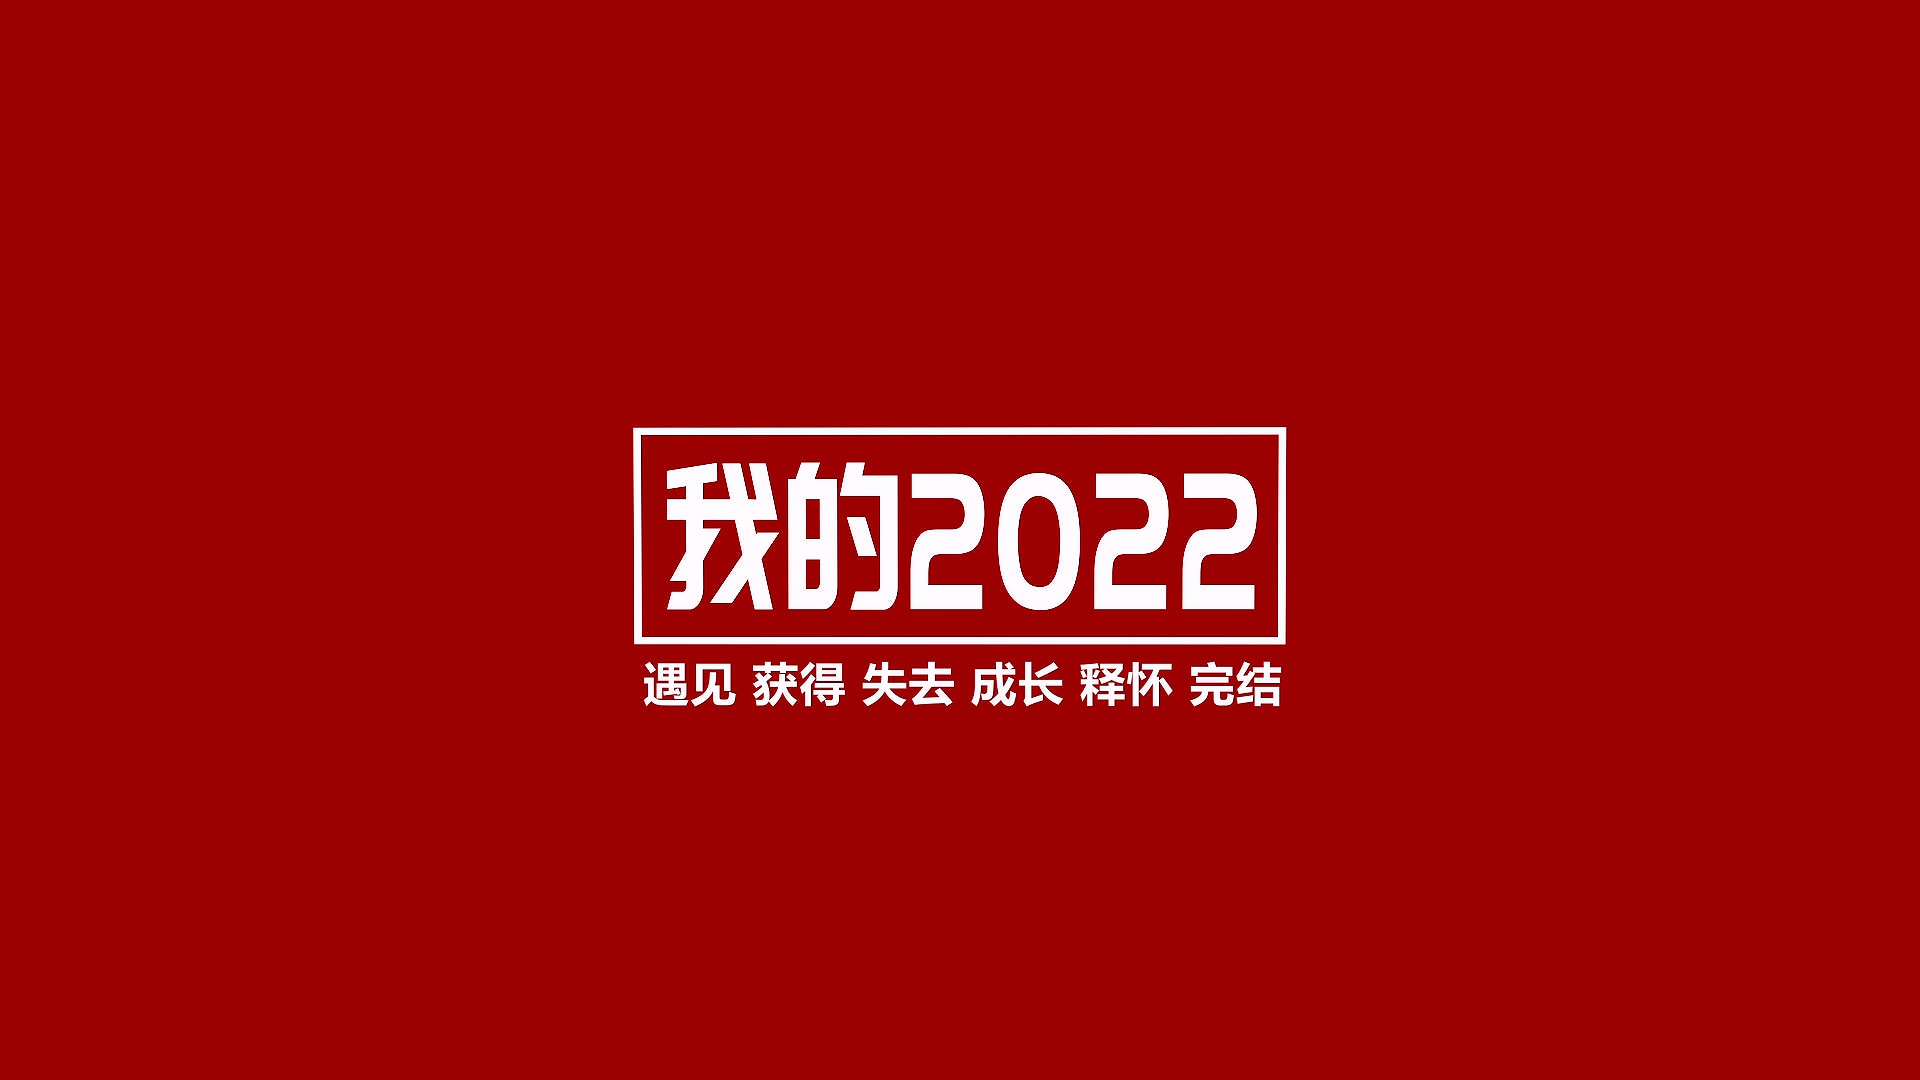 2022年终总结视频《我的2022》